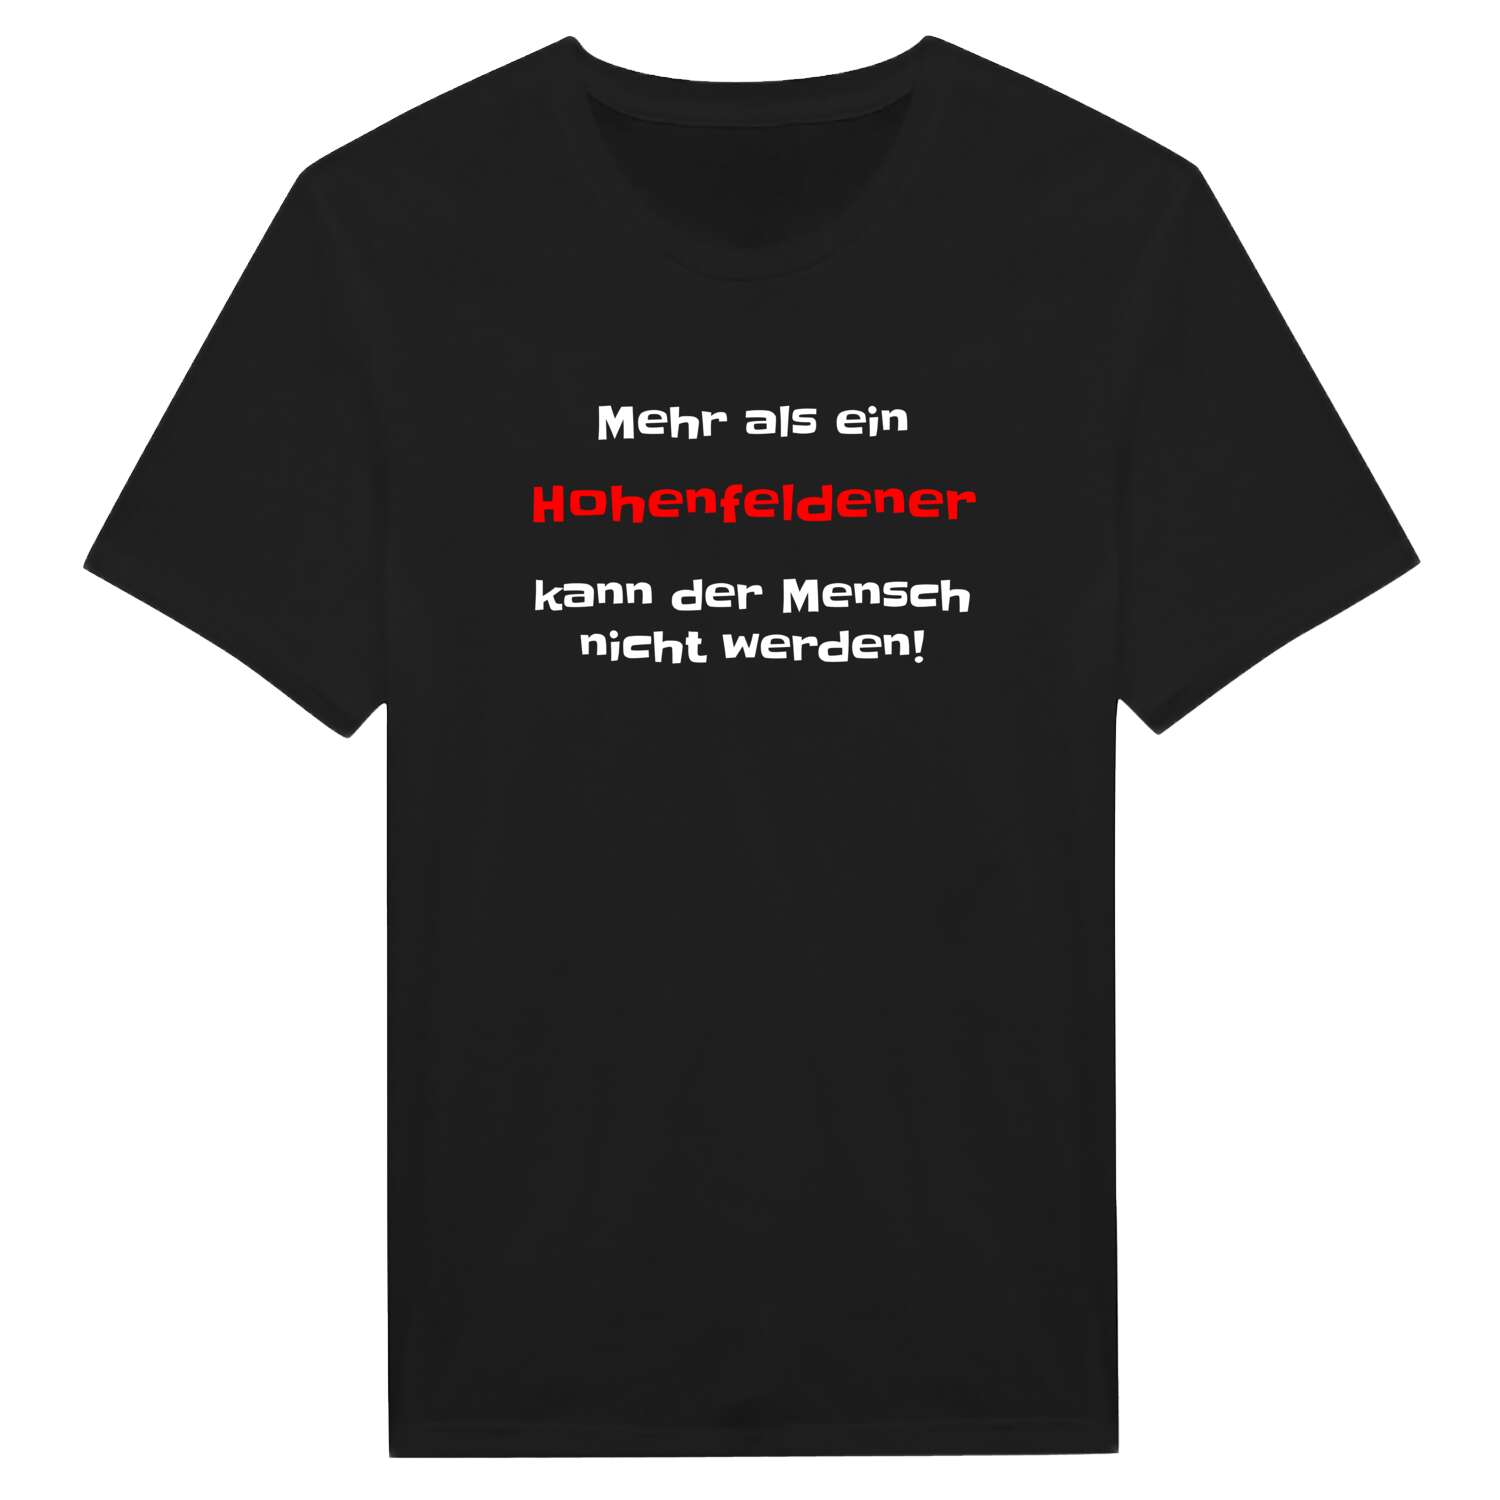 Hohenfelde T-Shirt »Mehr als ein«